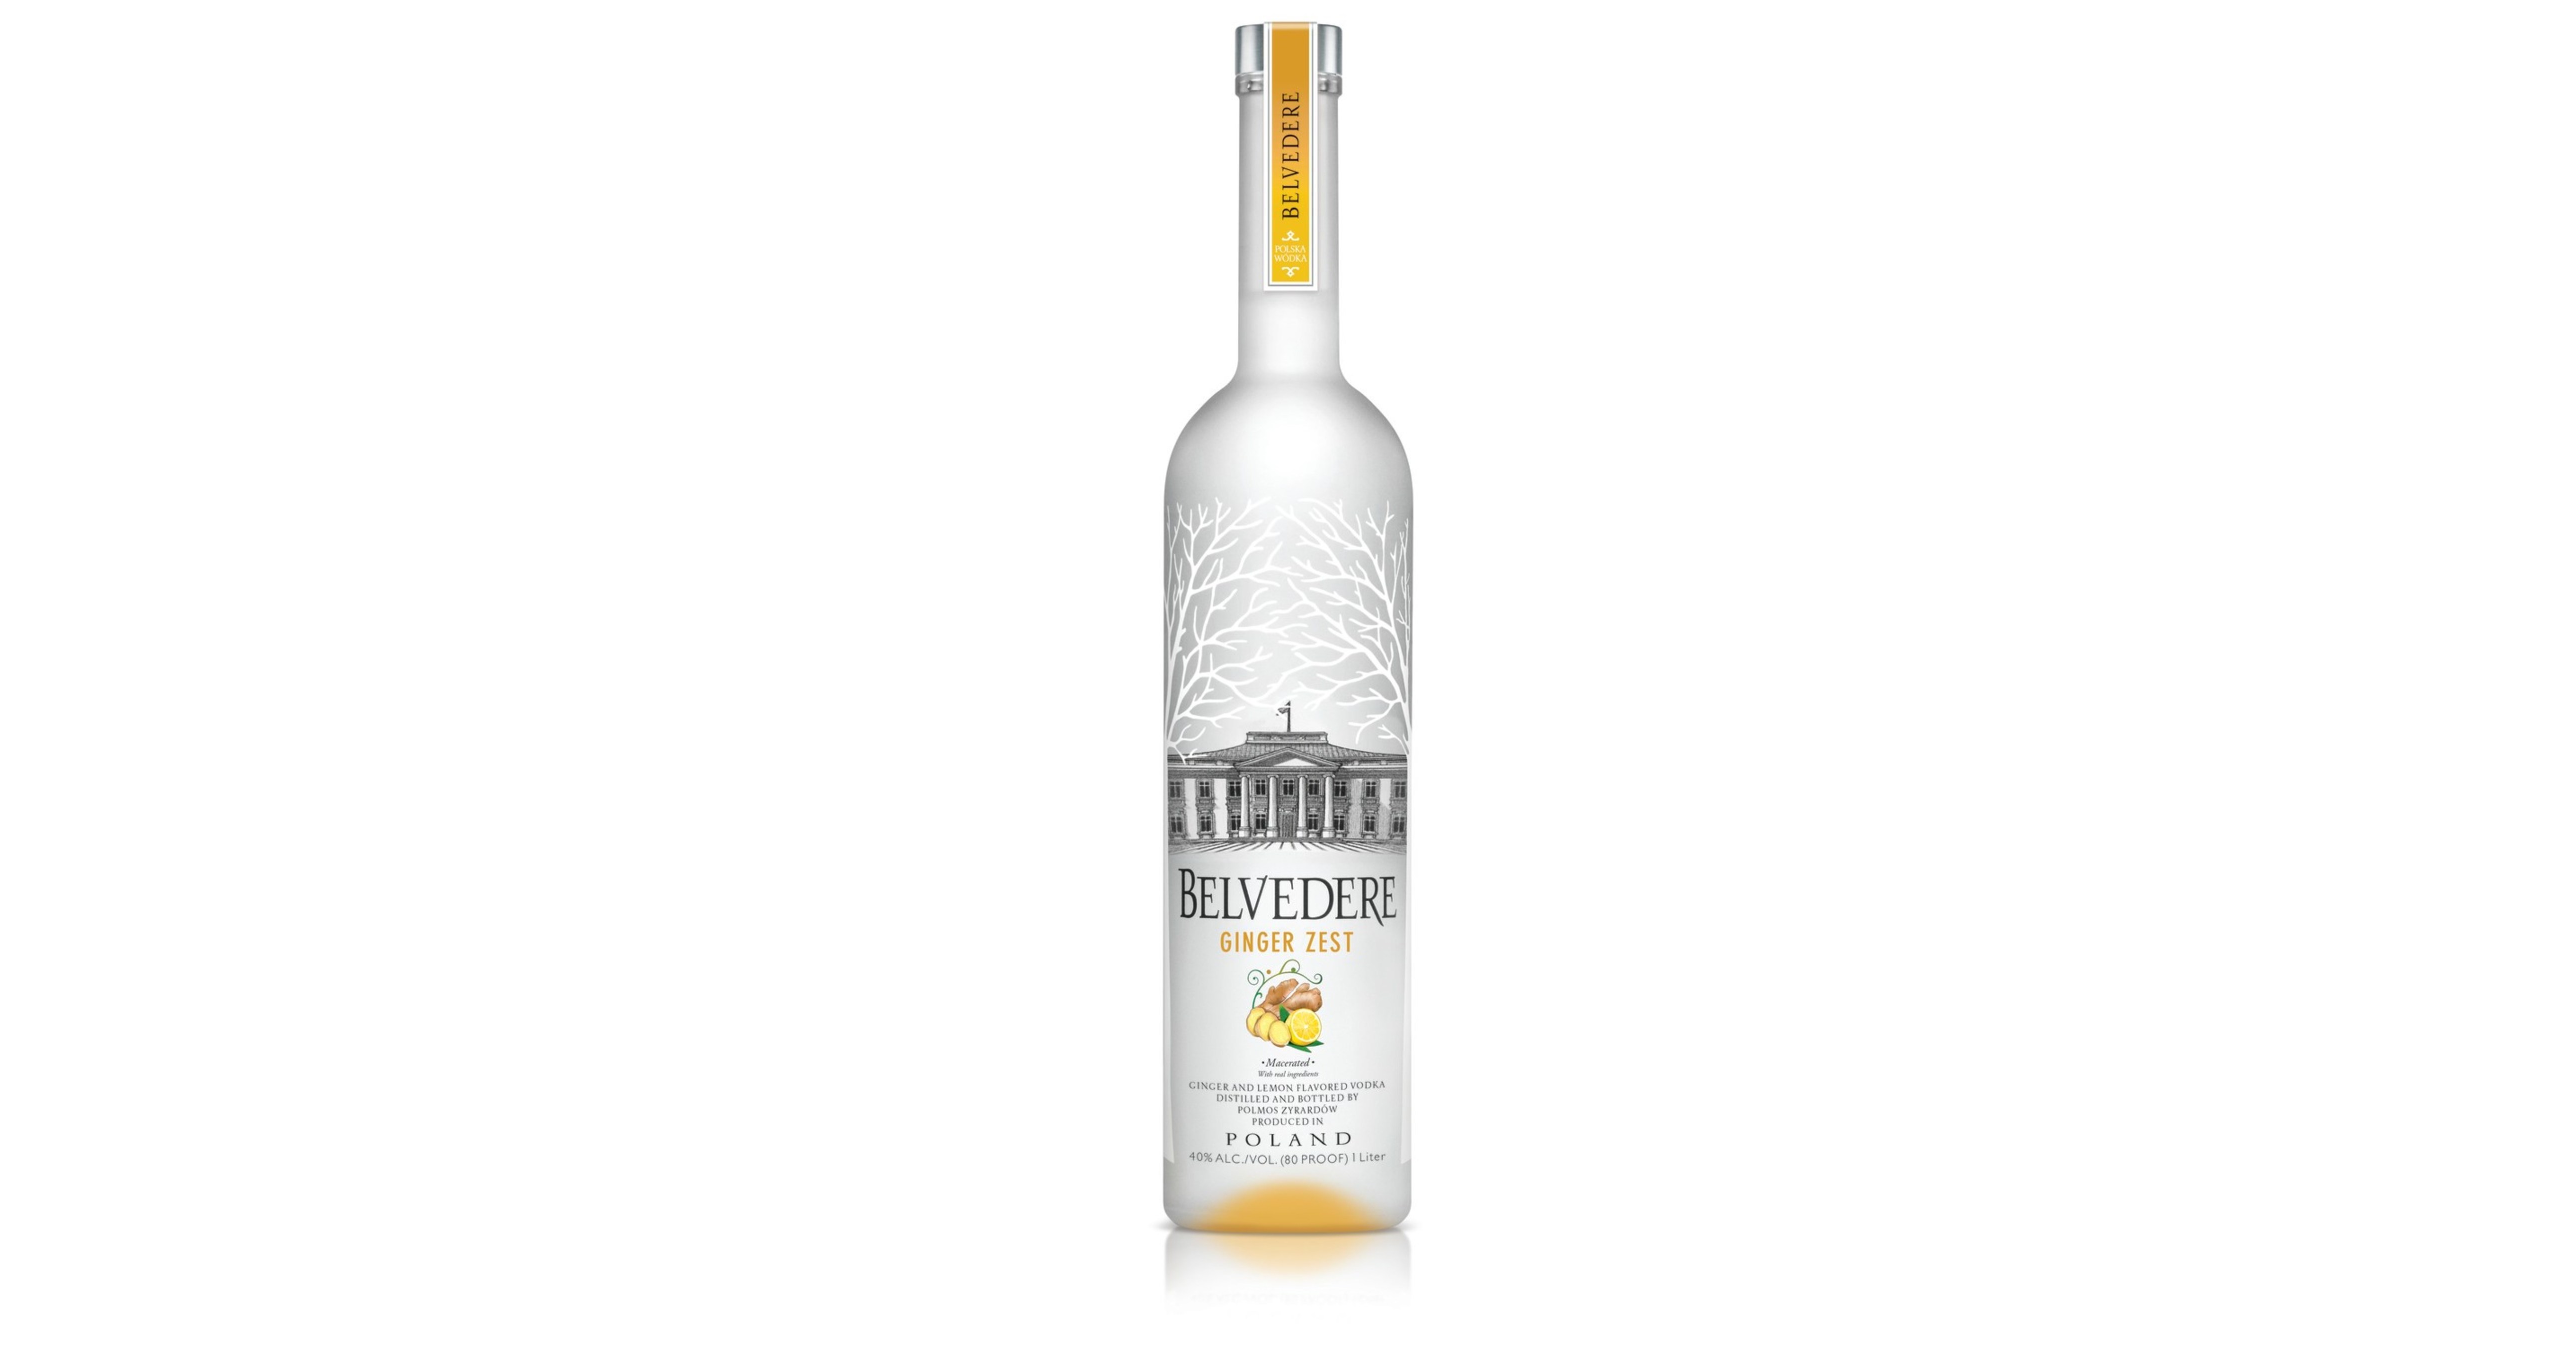 Belvedere Vodka - Spirits Network